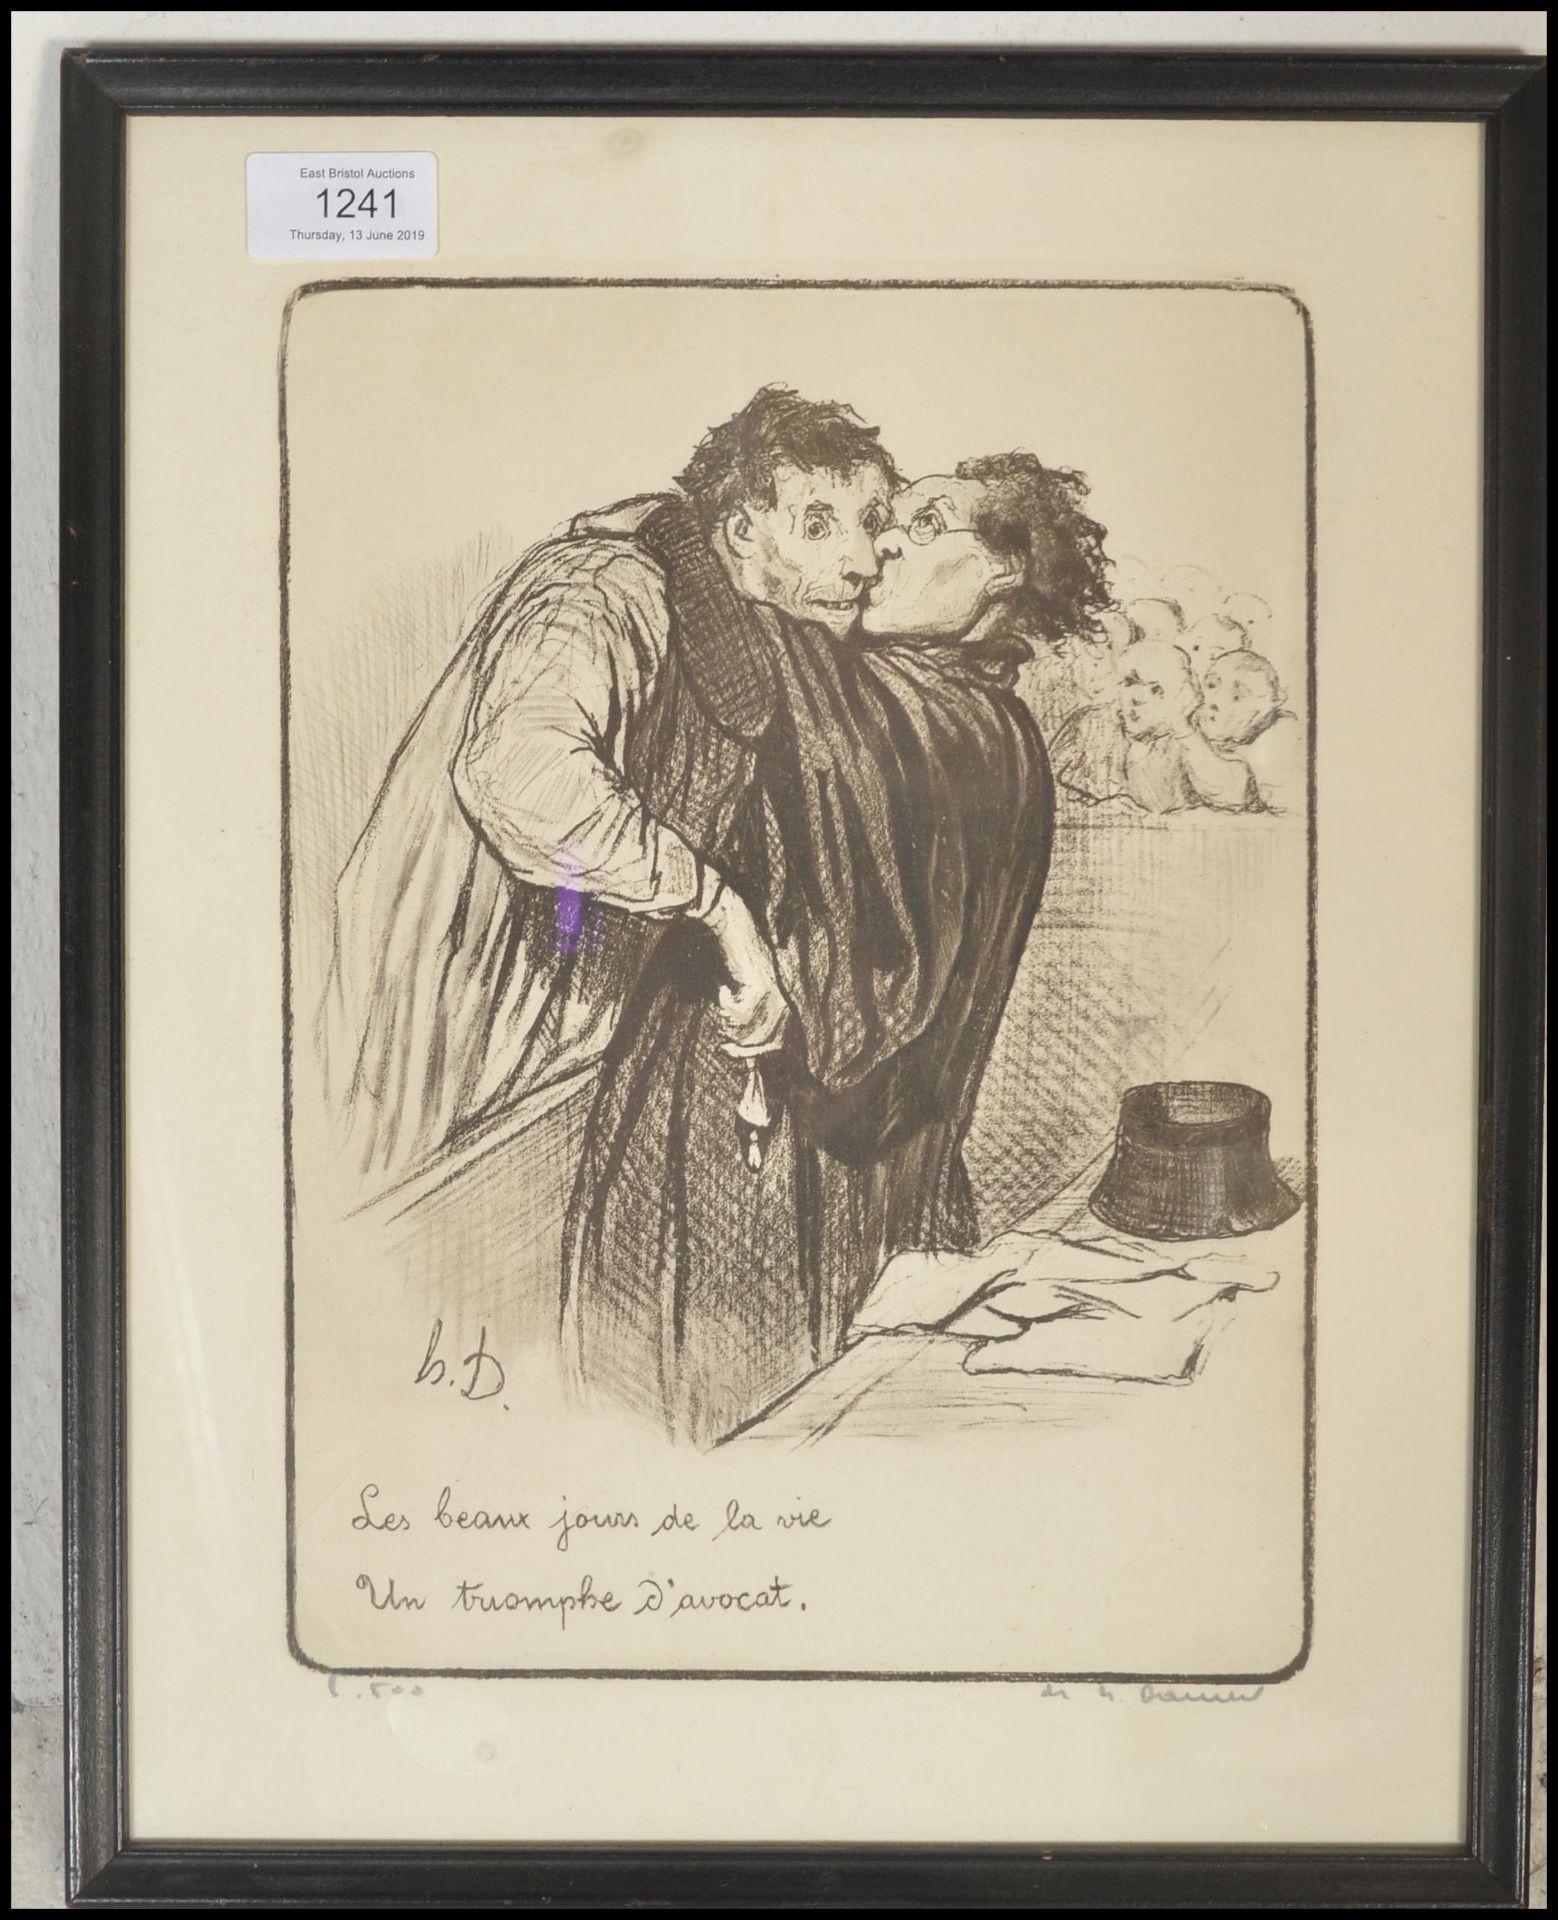 Honoré Daumier (French, 1808-1879)  A limited edition print no 8 of 500 of Les Beaux jours de la vie